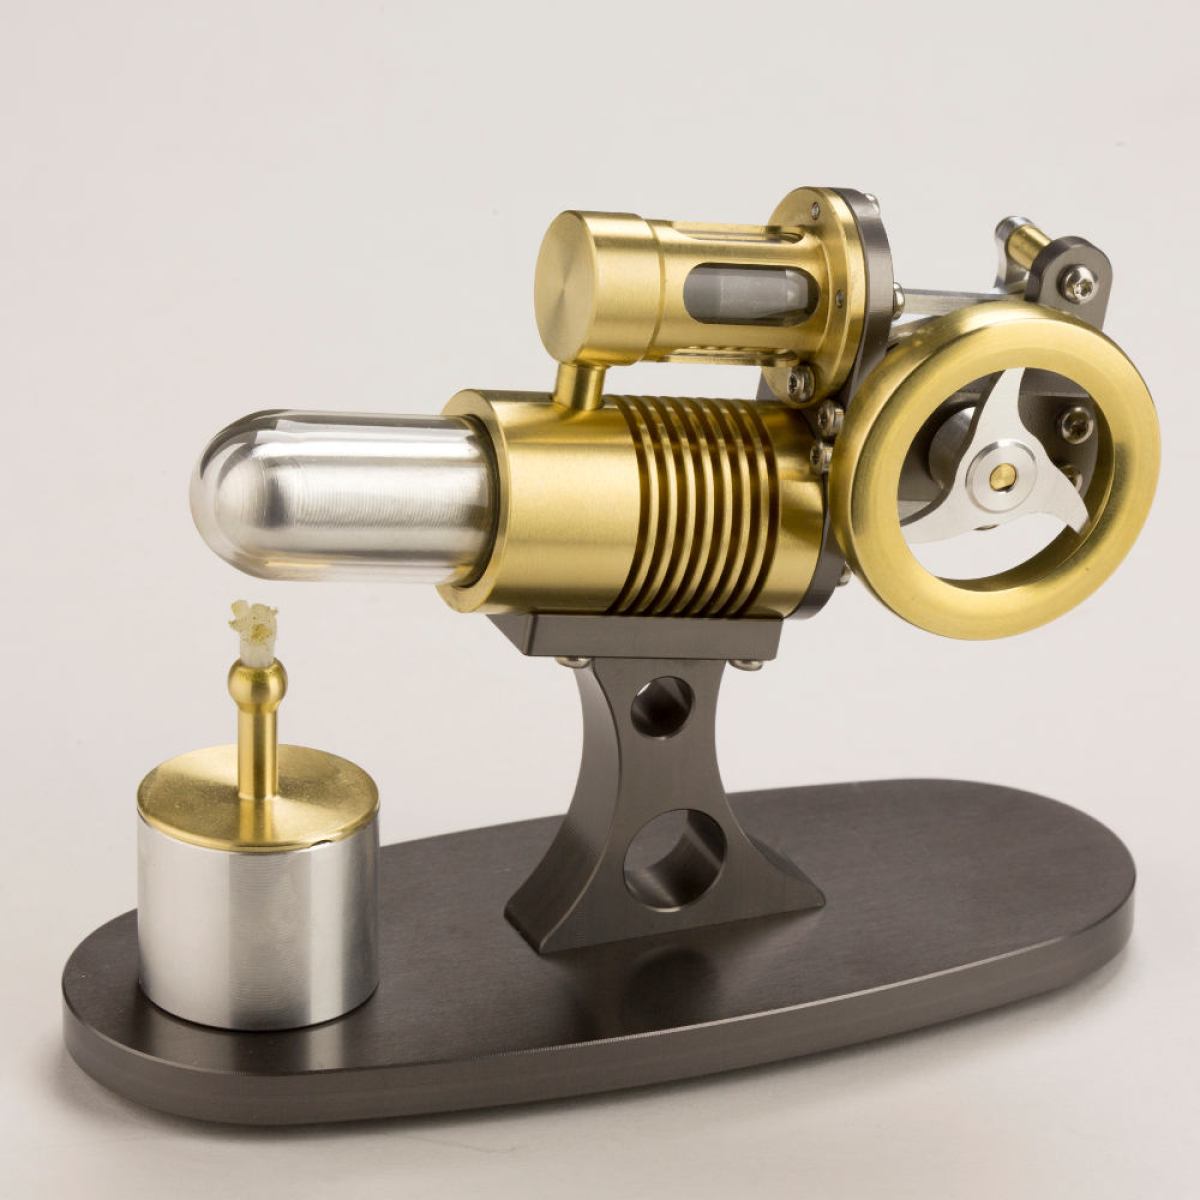 Echter Stirling-Motor im Teleskop-Design mit transparenten Zylindern